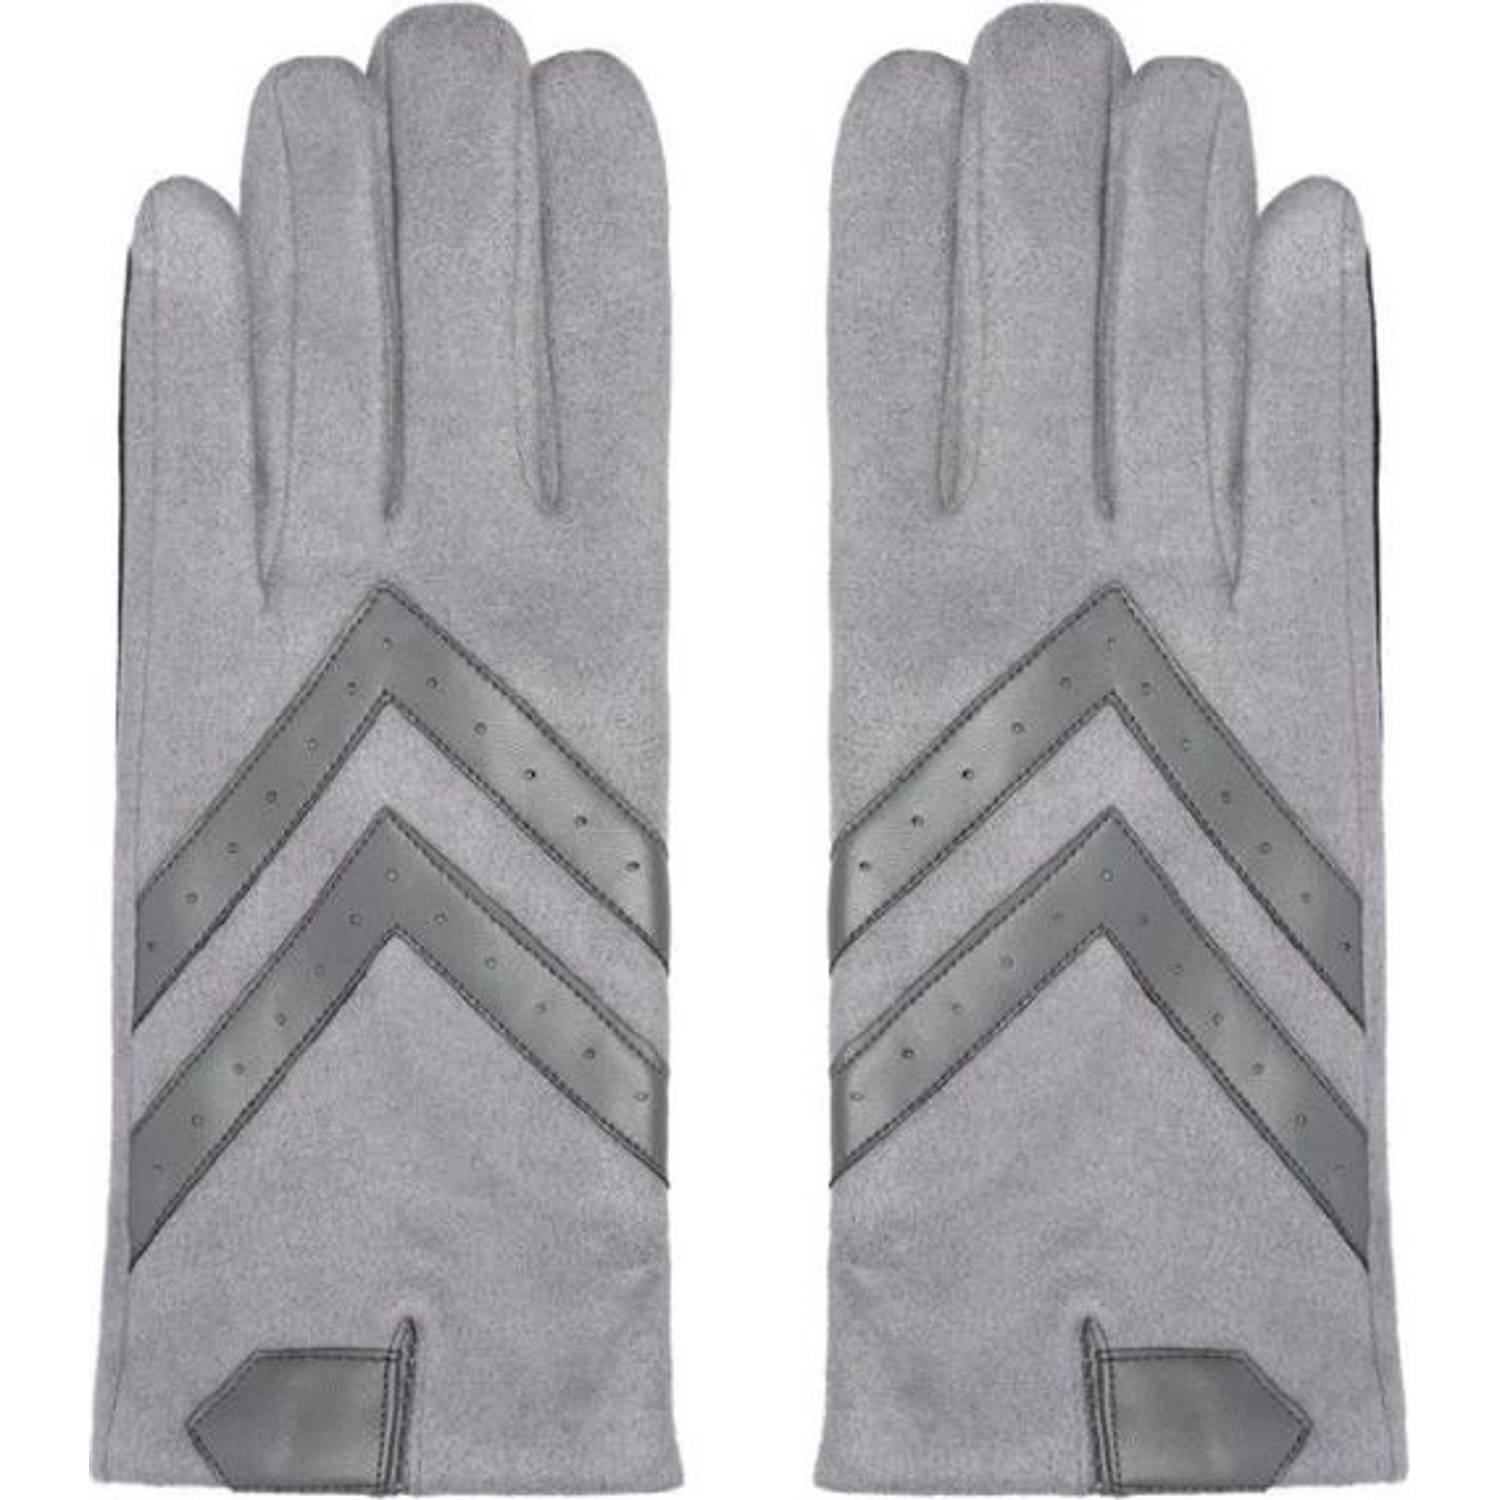 Handschoenen Dames Handschoenen Warm Touch grijs - Trendy handschoenen voor winter suède look- Touchscreen handschoenen